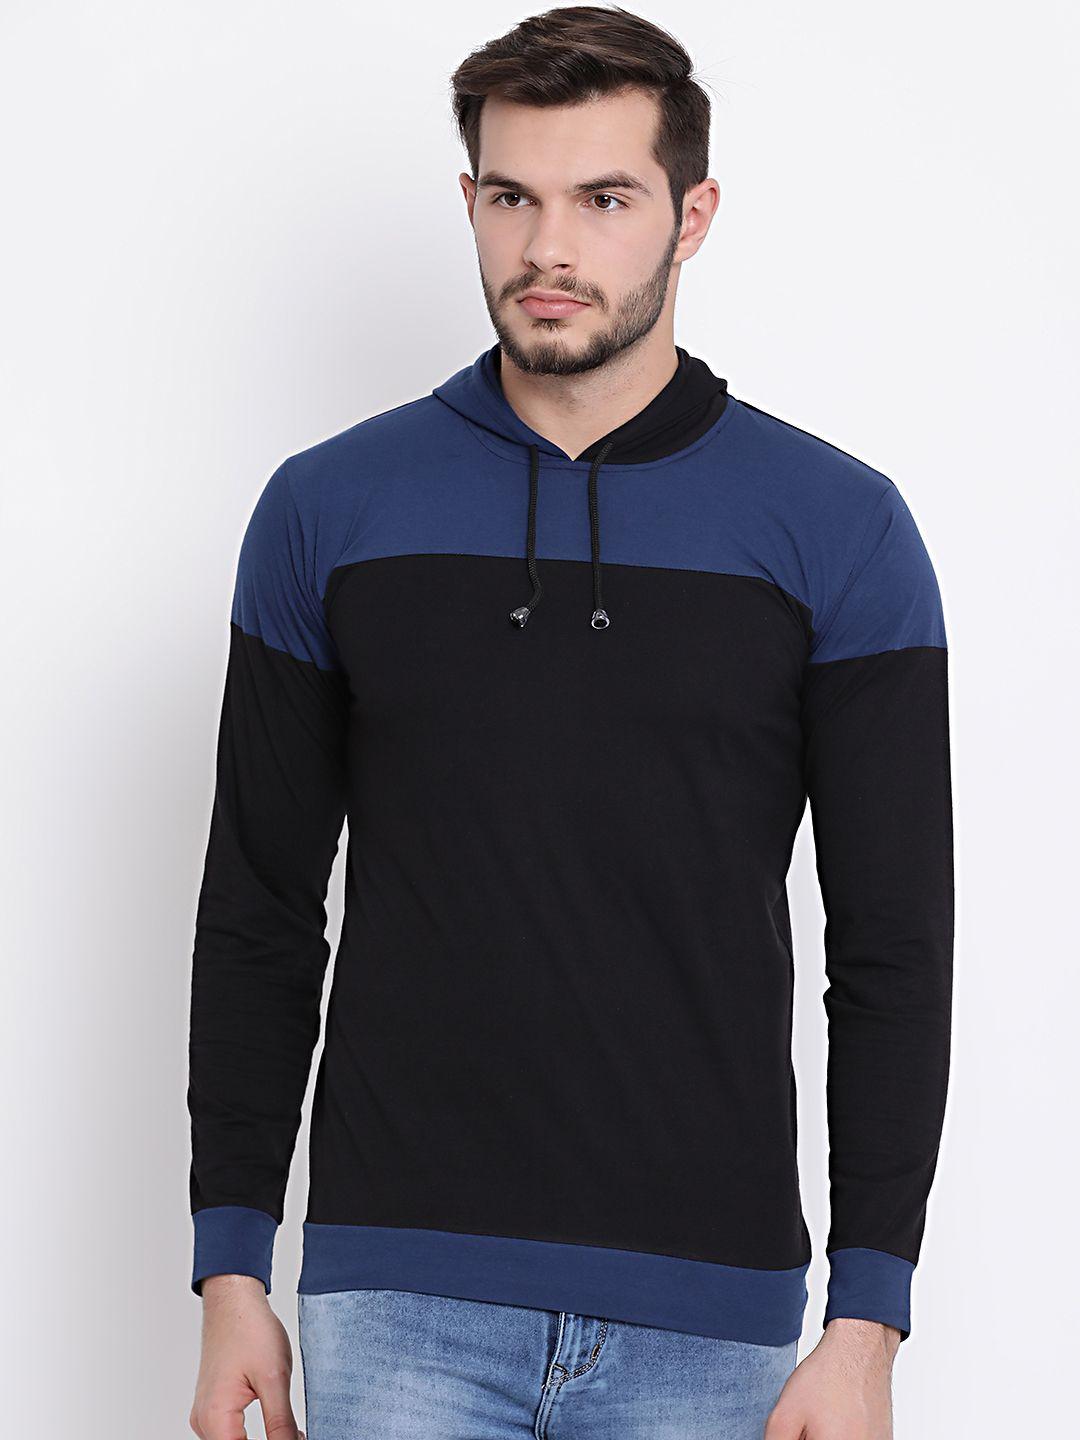 vimal jonney men black & blue colourblocked hooded t-shirt